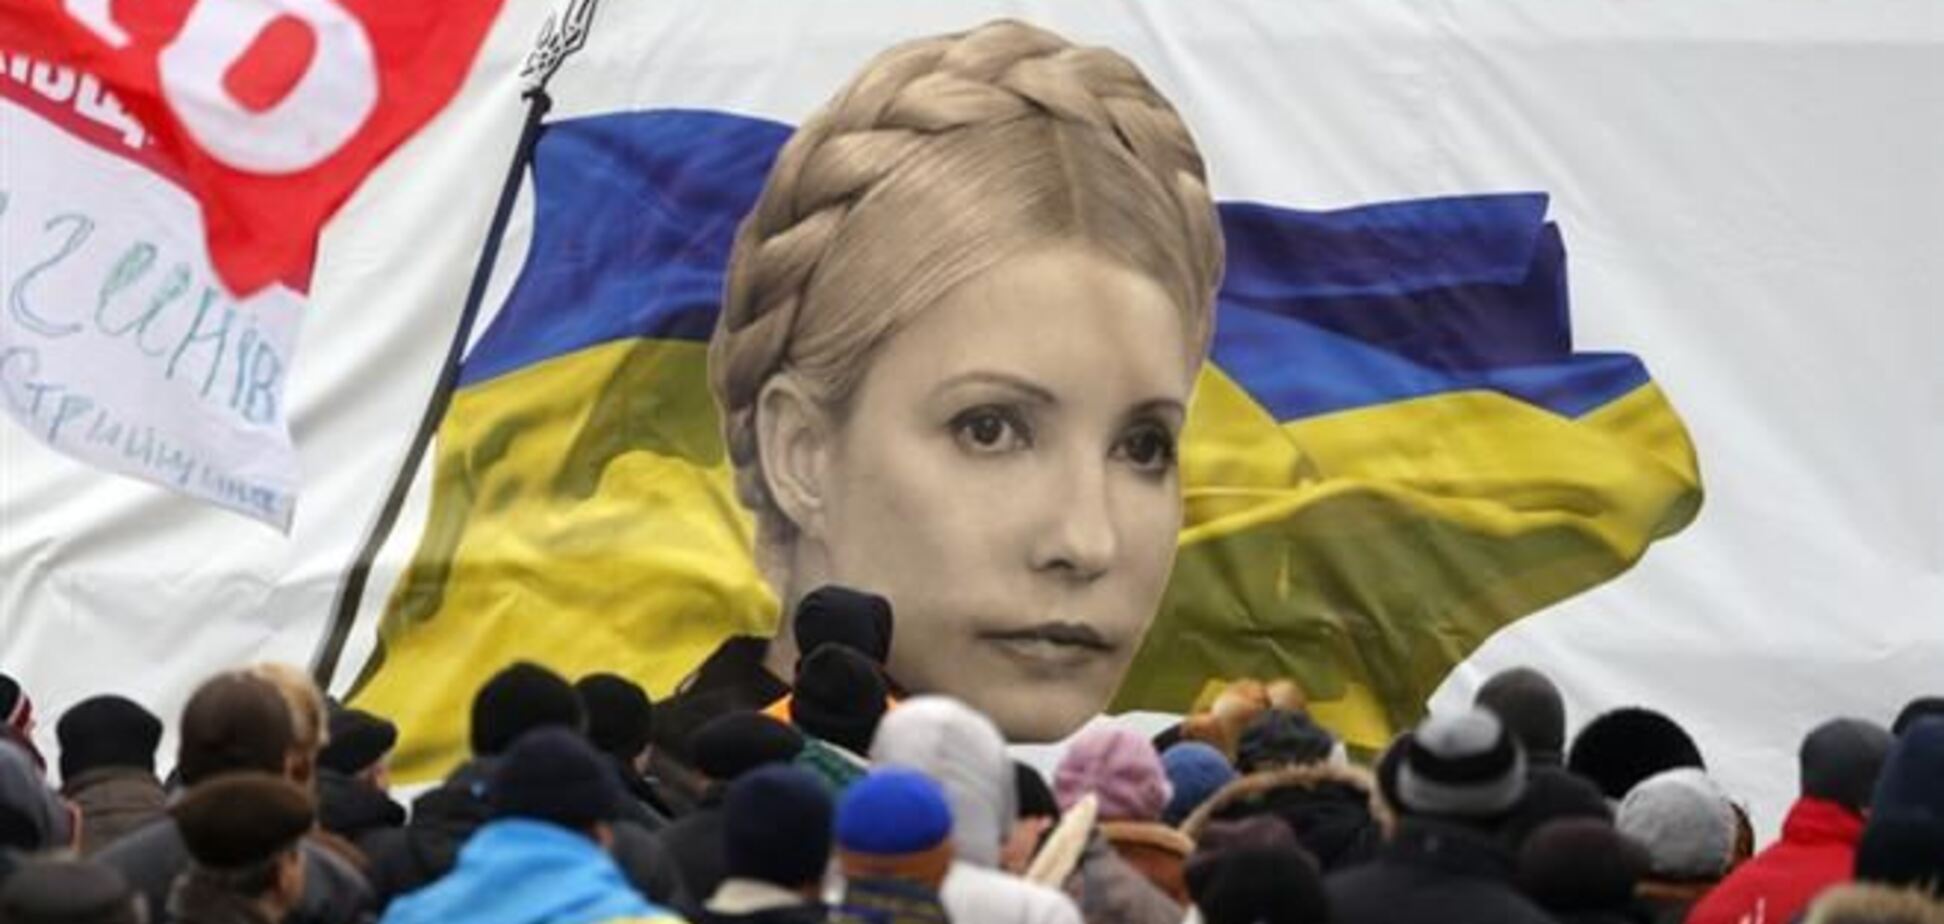 Петиція про звільнення Тимошенко зібрала 100 тис. підписів